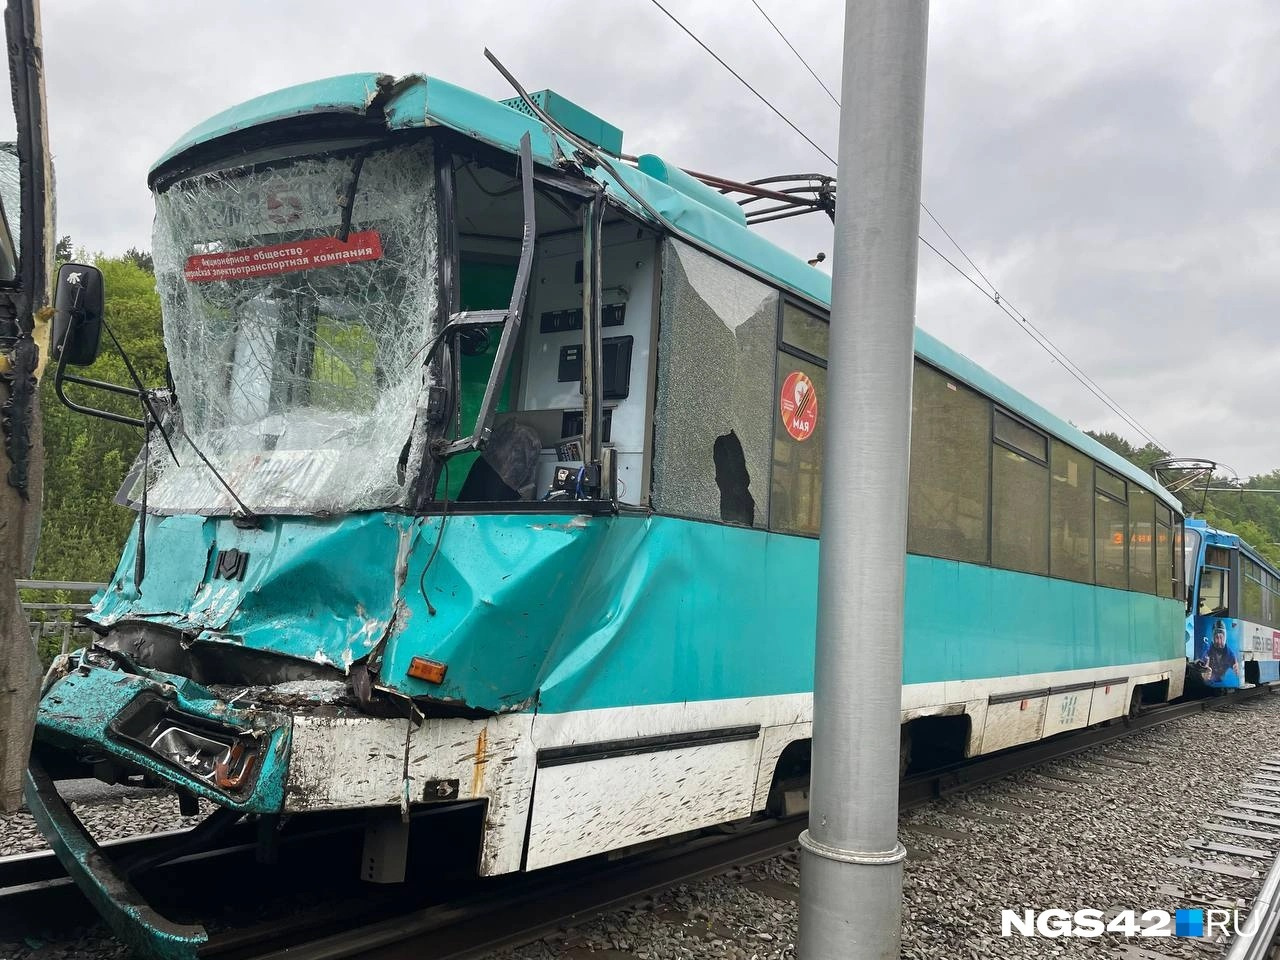 «Состояние не вызывает опасений»: водителя кемеровского трамвая, у которого отказали тормоза, выписали из стационара